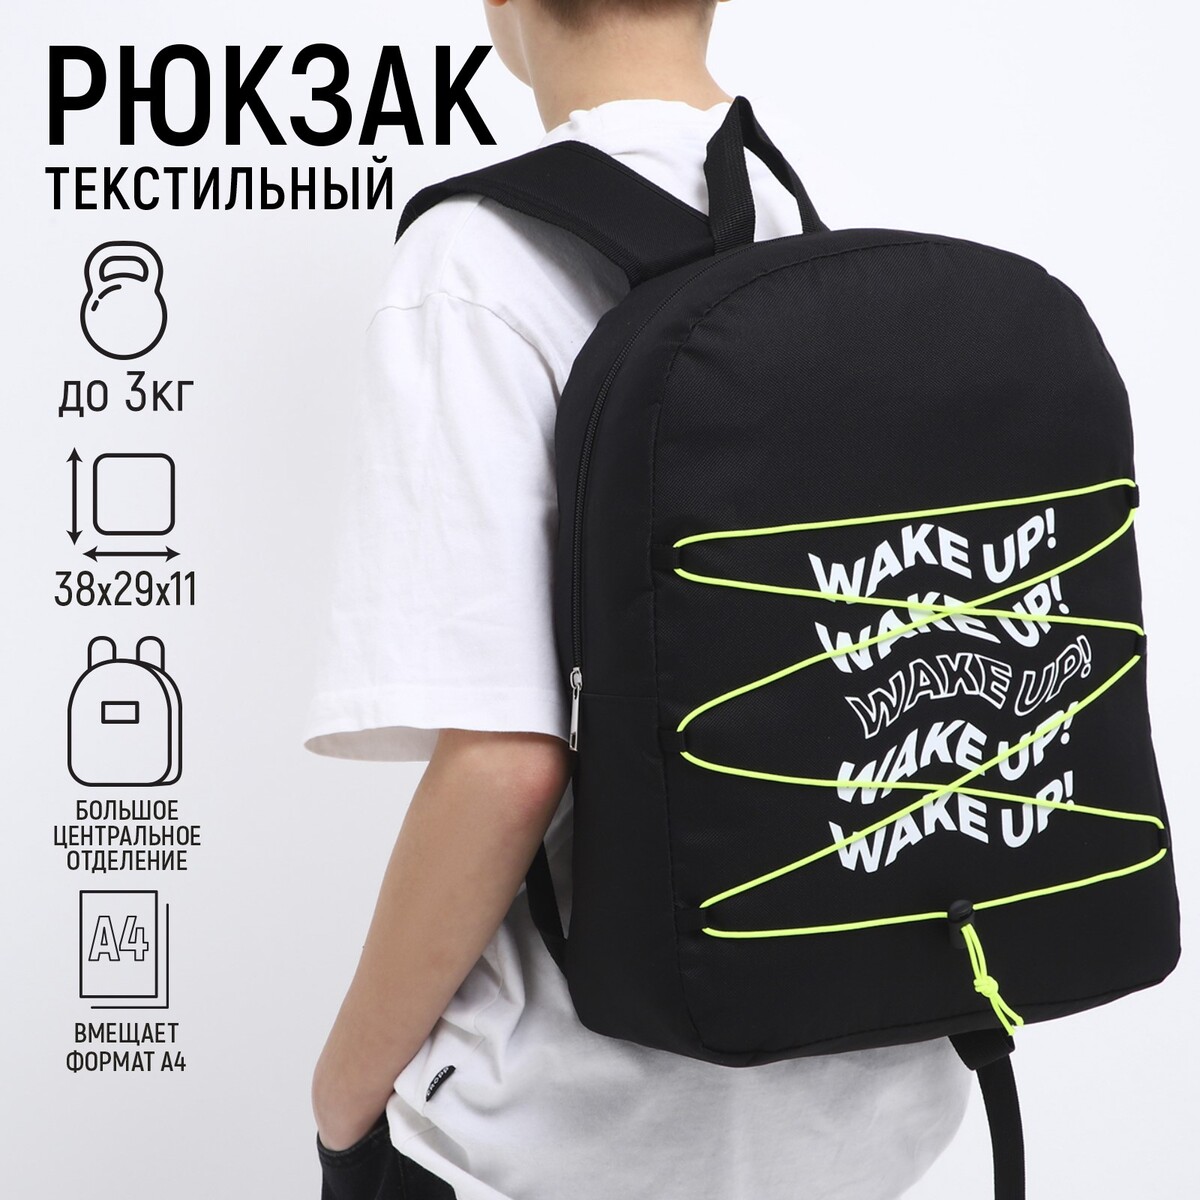 Рюкзак текстильный со шнуровкой wake up, 38х29х11 см, черный